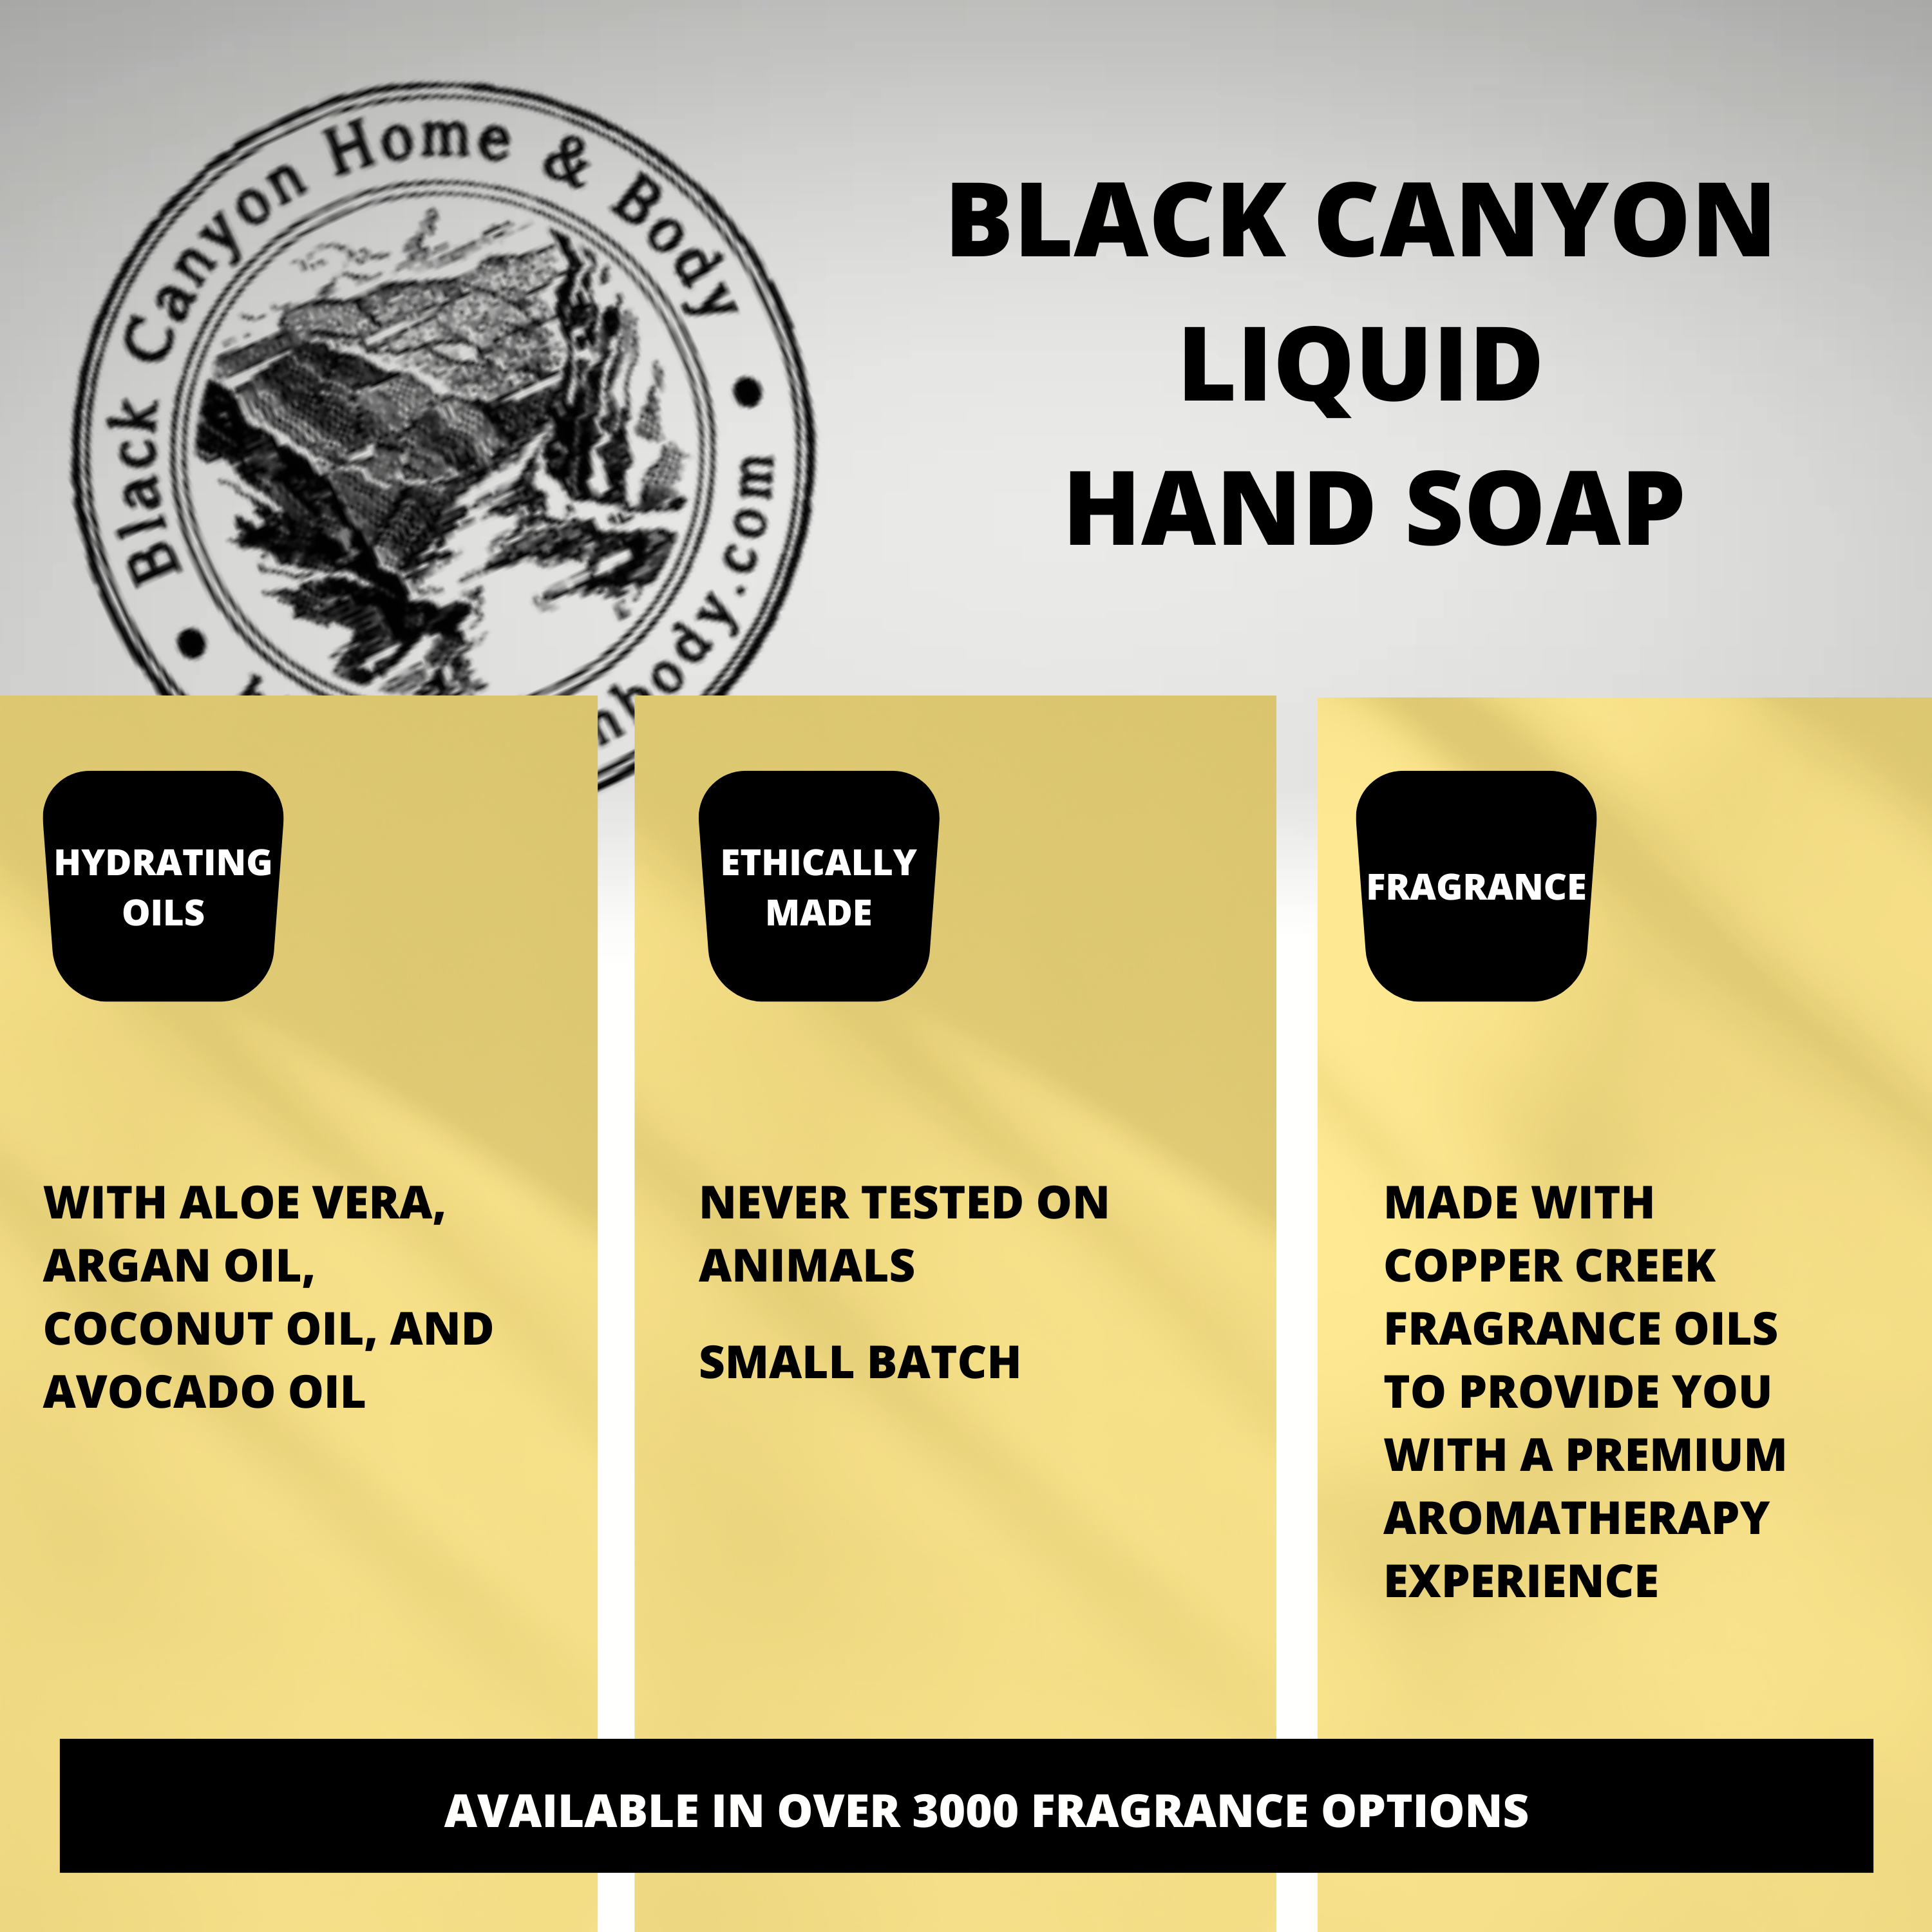 Black Canyon Egg Nog Scented Liquid Hand Soap